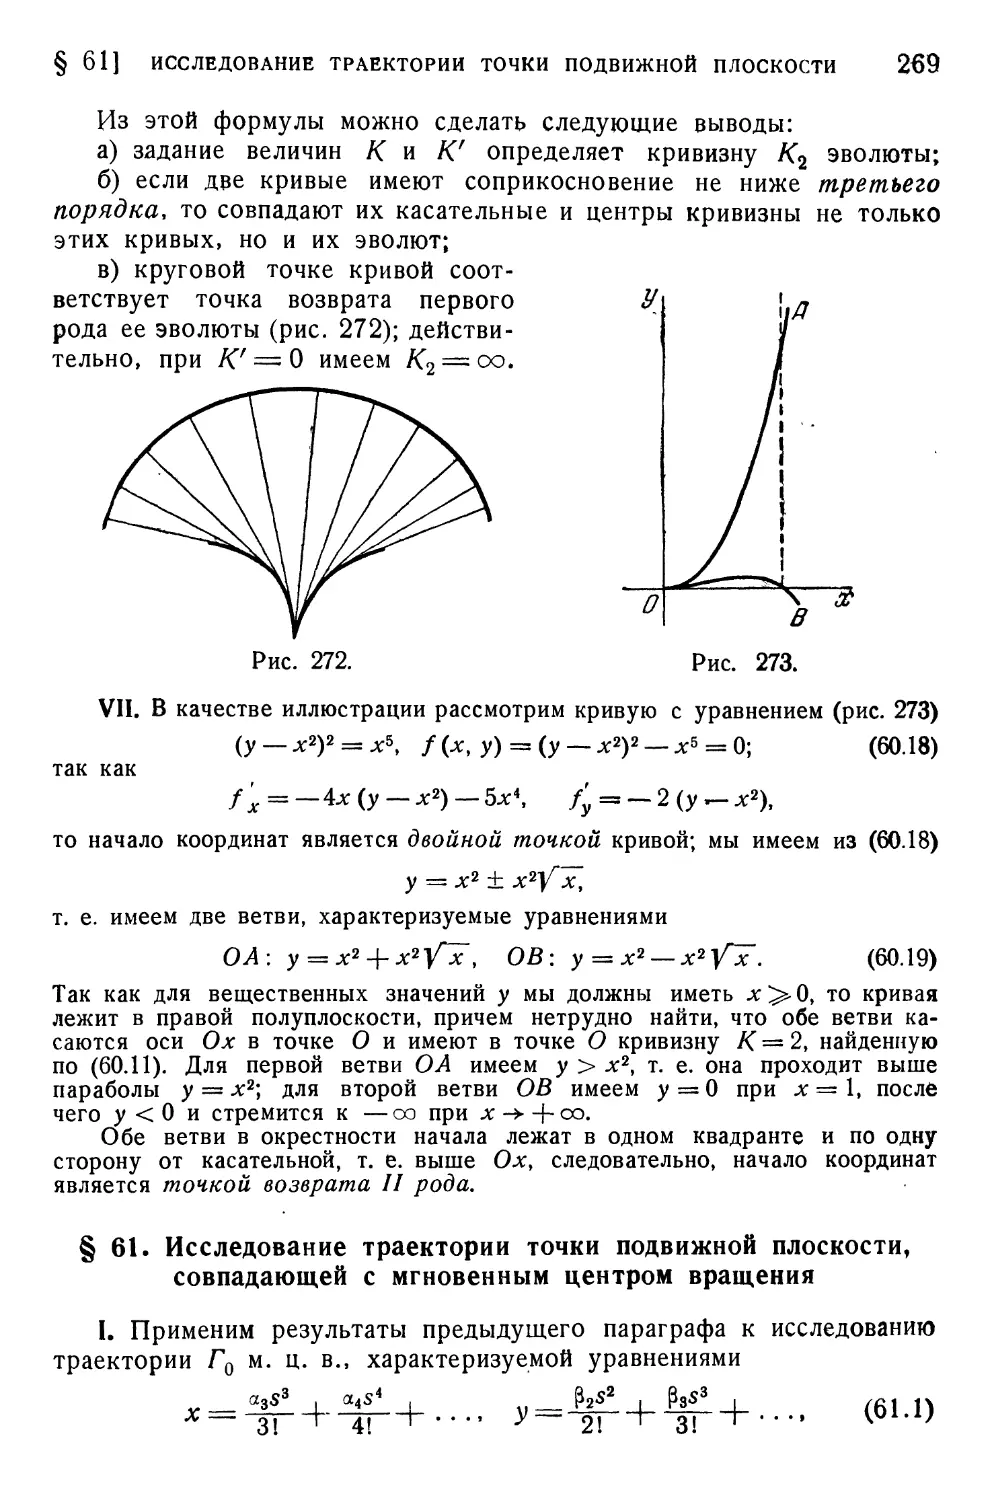 § 61 Исследование траектории точки подвижной плоскости, совпадающей с мгновенным центром вращения